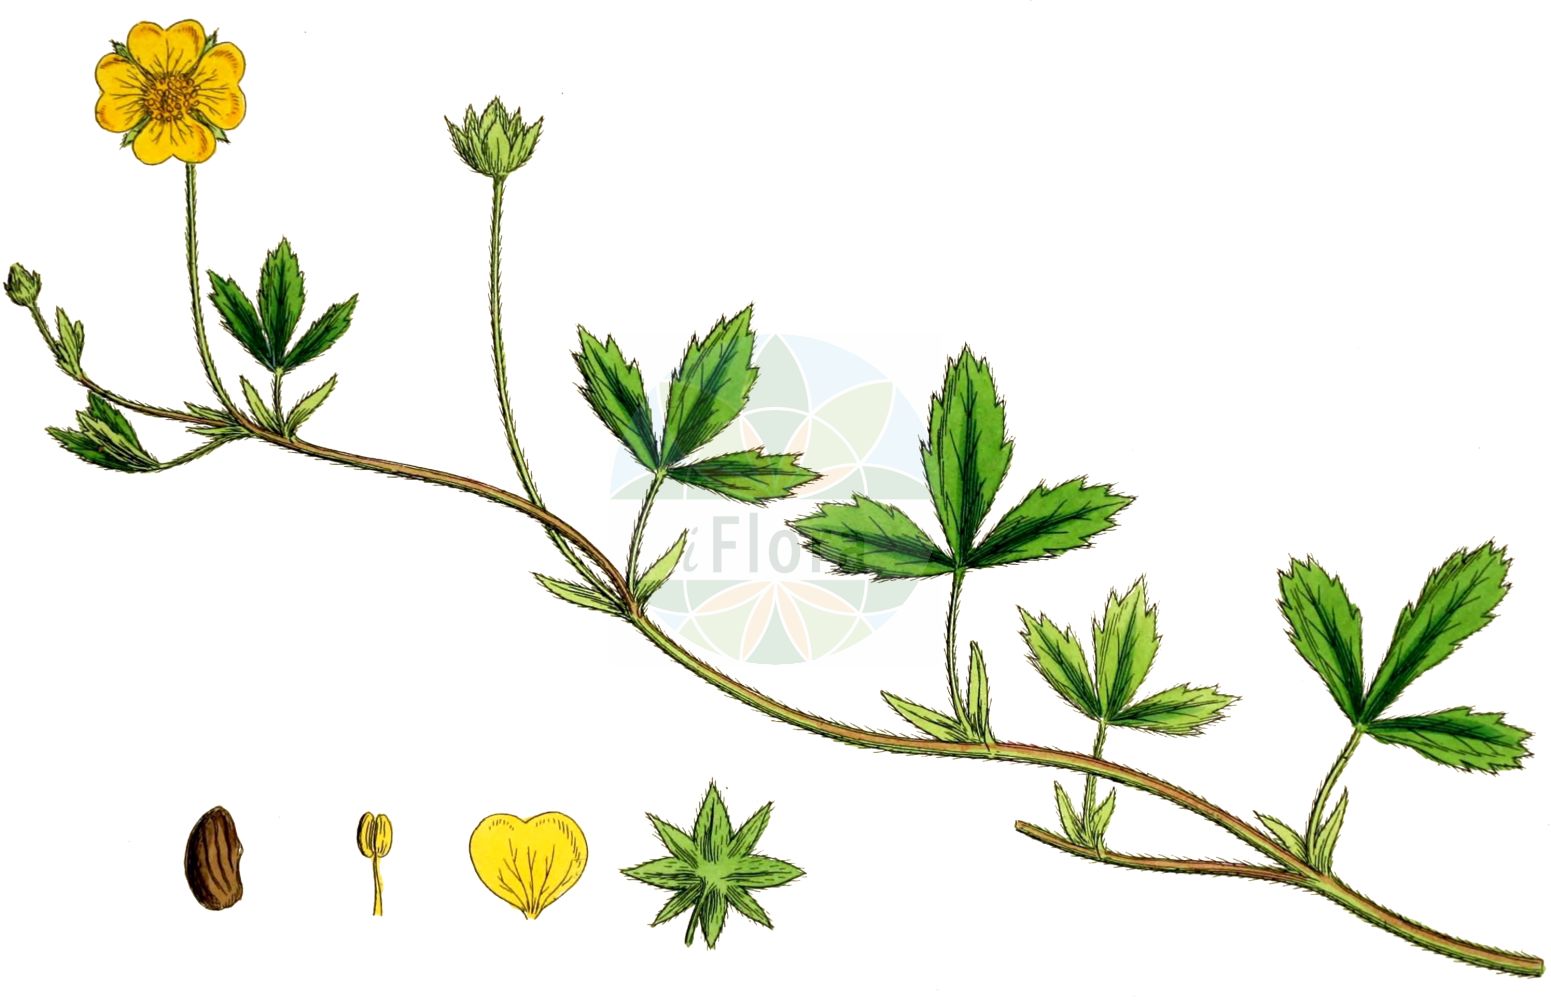 Historische Abbildung von Potentilla anglica (Englisches Fingerkraut - Trailing Tormentil). Das Bild zeigt Blatt, Bluete, Frucht und Same. ---- Historical Drawing of Potentilla anglica (Englisches Fingerkraut - Trailing Tormentil). The image is showing leaf, flower, fruit and seed.(Potentilla anglica,Englisches Fingerkraut,Trailing Tormentil,Potentilla anglica,Potentilla nemoralis,Potentilla salisii,Potentilla tormentilla subsp. procumbens,Englisches Fingerkraut,Trailing Tormentil,English Cinquefoil,Silver Cinquefoil,Potentilla,Fingerkraut,Cinquefoil,Rosaceae,Rosengewächse,Rose family,Blatt,Bluete,Frucht,Same,leaf,flower,fruit,seed,Sowerby (1790-1813))